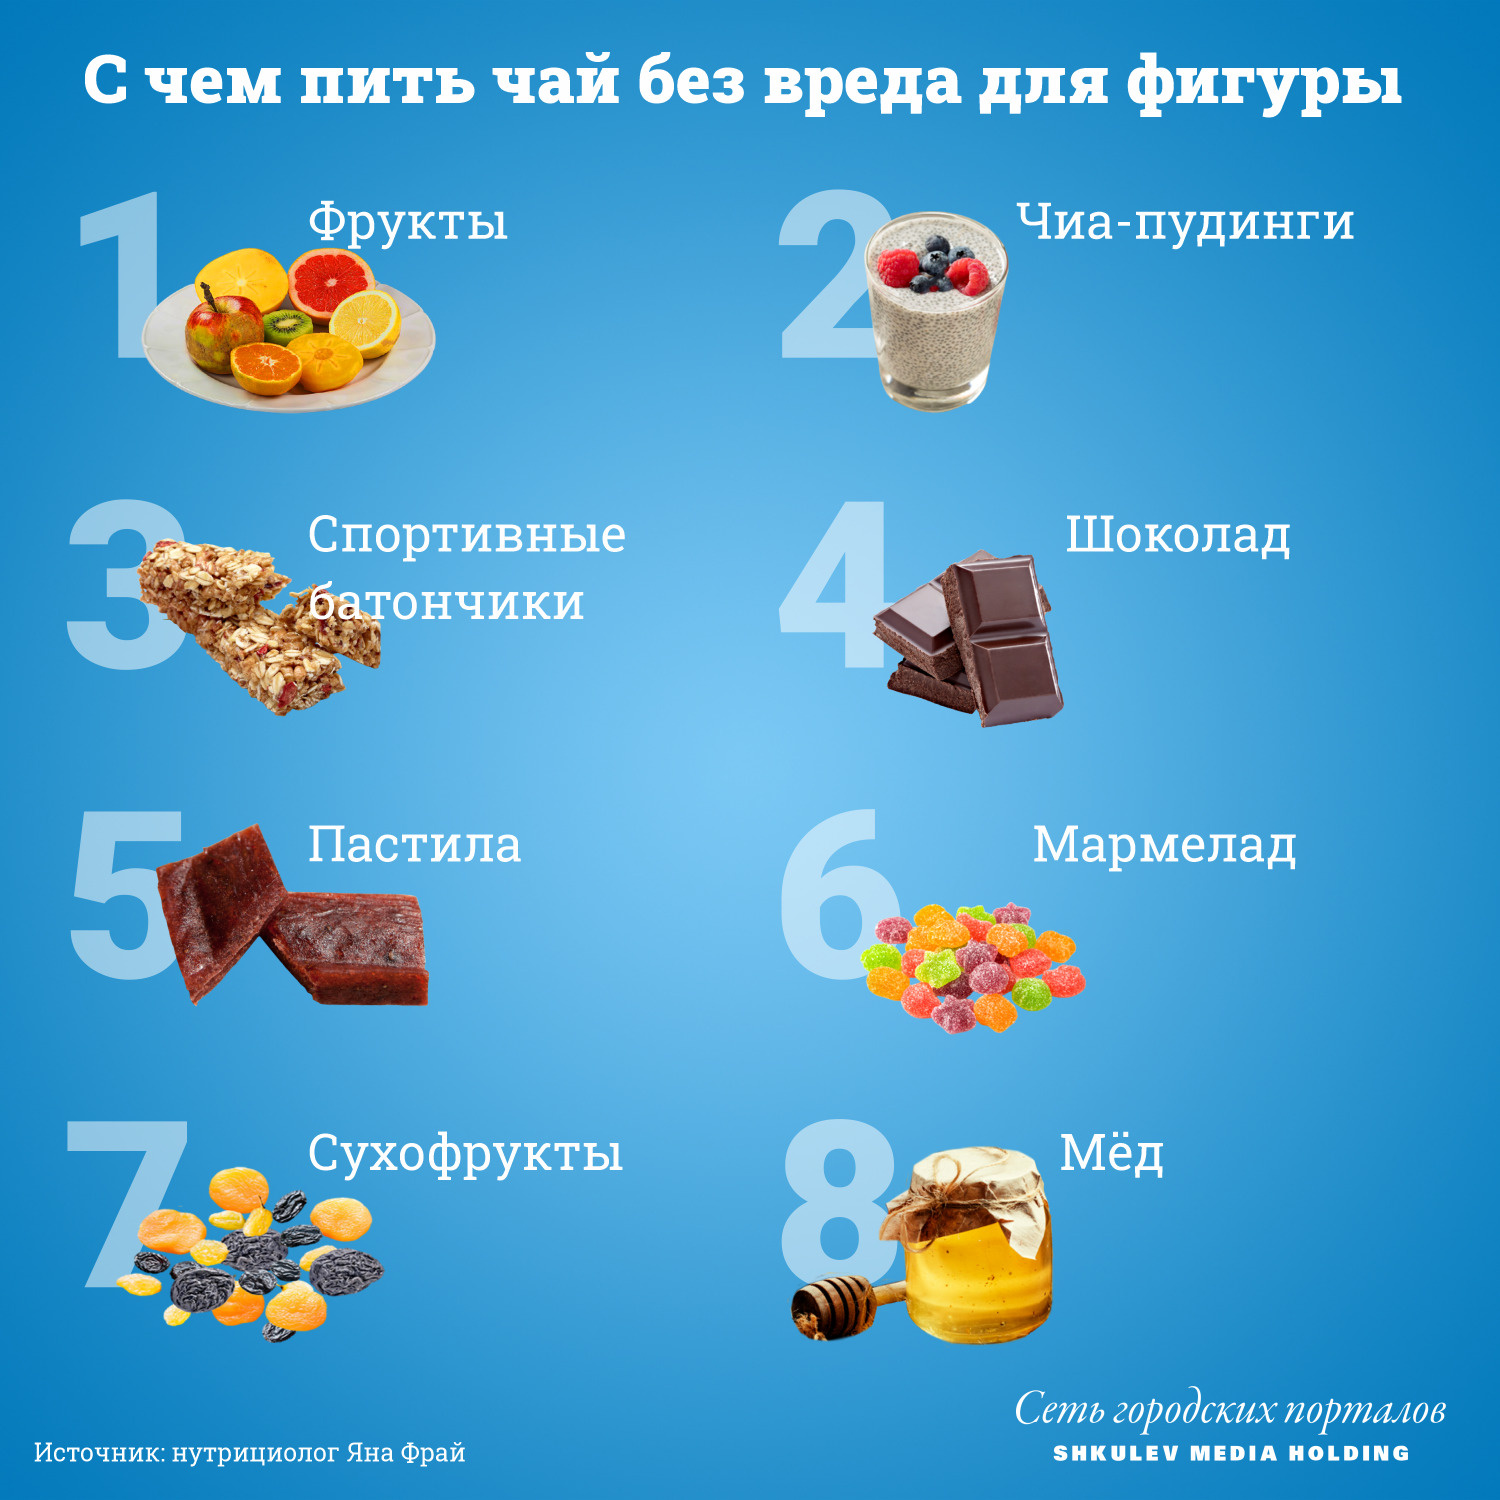 Низкокалорийные десерты - ПП рецепты | блог магазина Kondishop